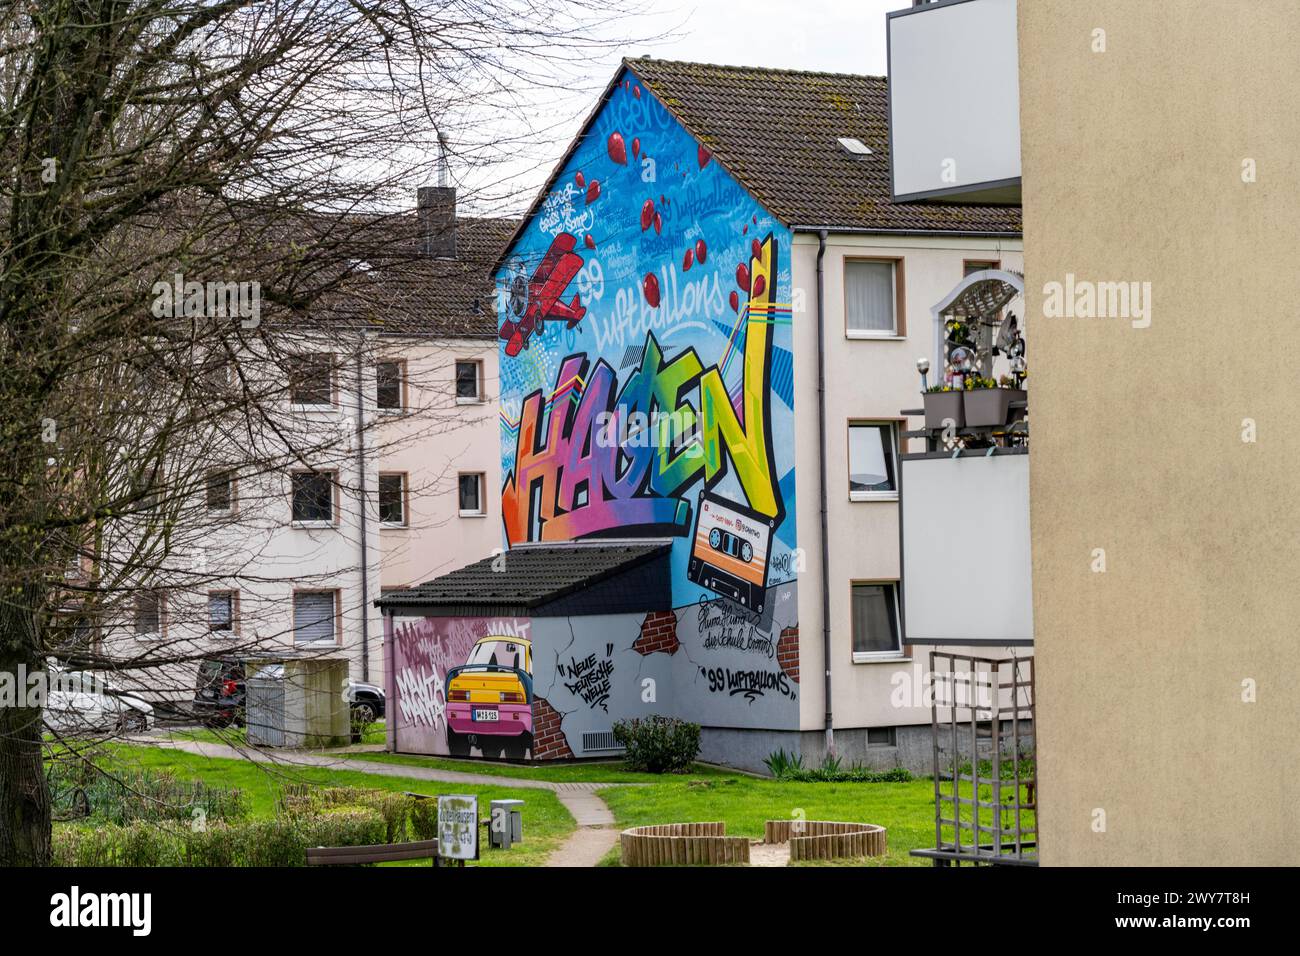 Wohnsiedlung, Mehrfamilienhäuser, buntes Wandgemälde mit lokalem Bezug, Musik, 99 Ballons, in Hagen Vorhalle, NRW, Deutschland Stockfoto